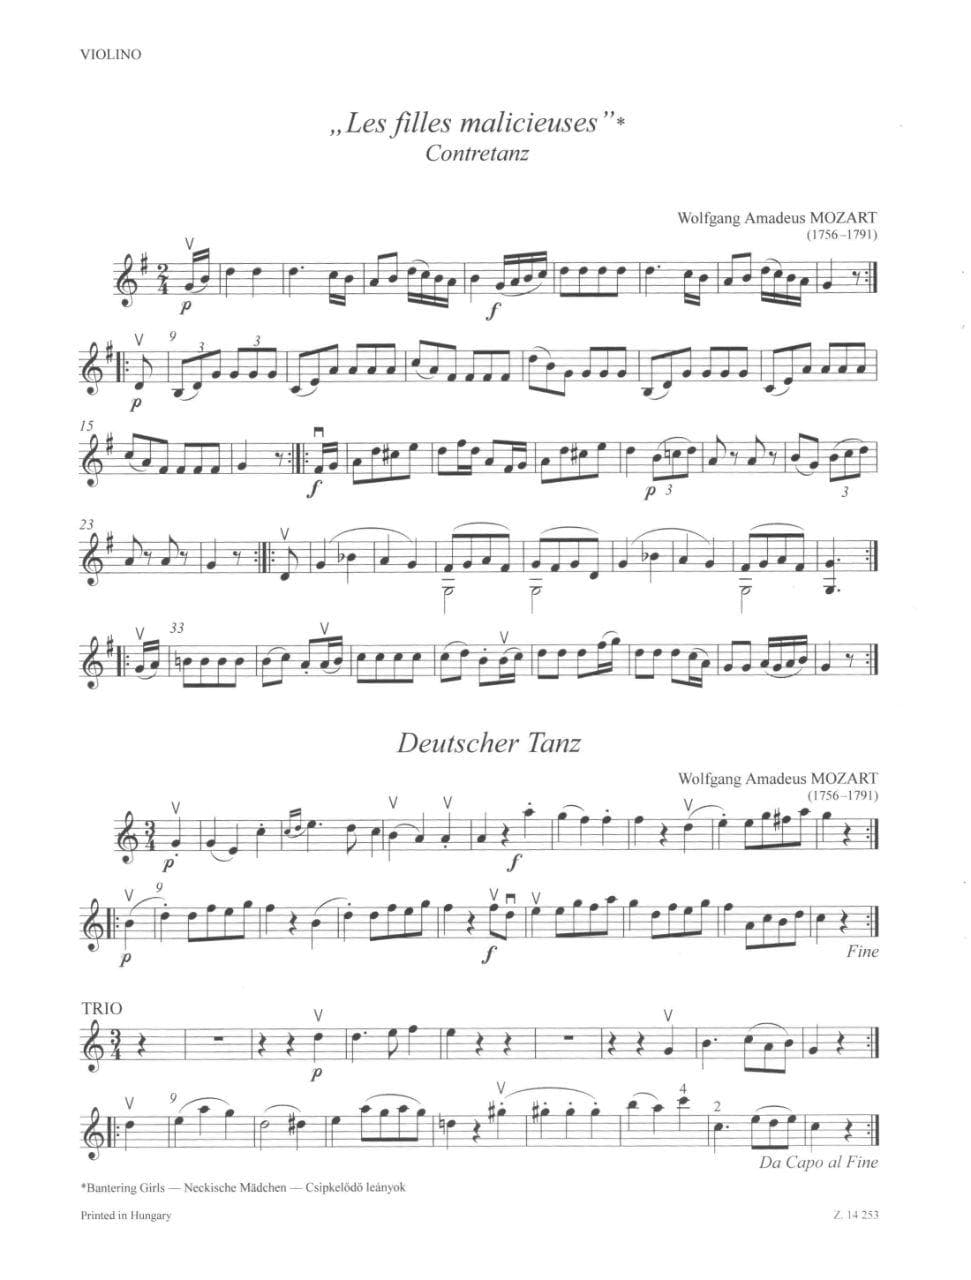 Pejtsik/Vigh - Music for Piano Quartet Violin, Viola (or Violin 2), Cello, Piano Published by Editio Musica Budapest